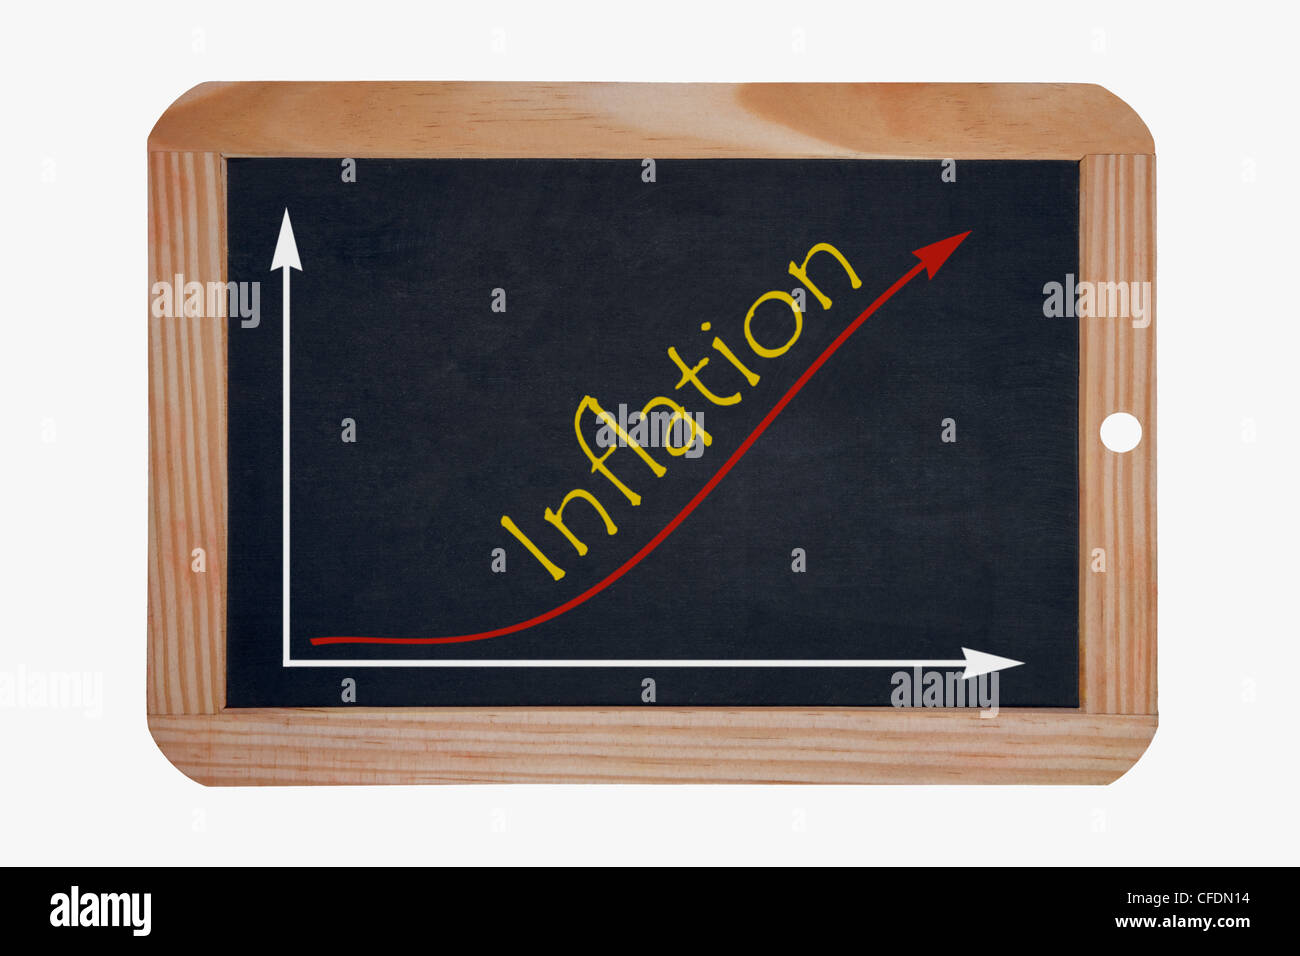 Dettaglio foto di una lavagna, un grafico con una curva crescente su questo, accanto alla parola inflazione è scritto Foto Stock